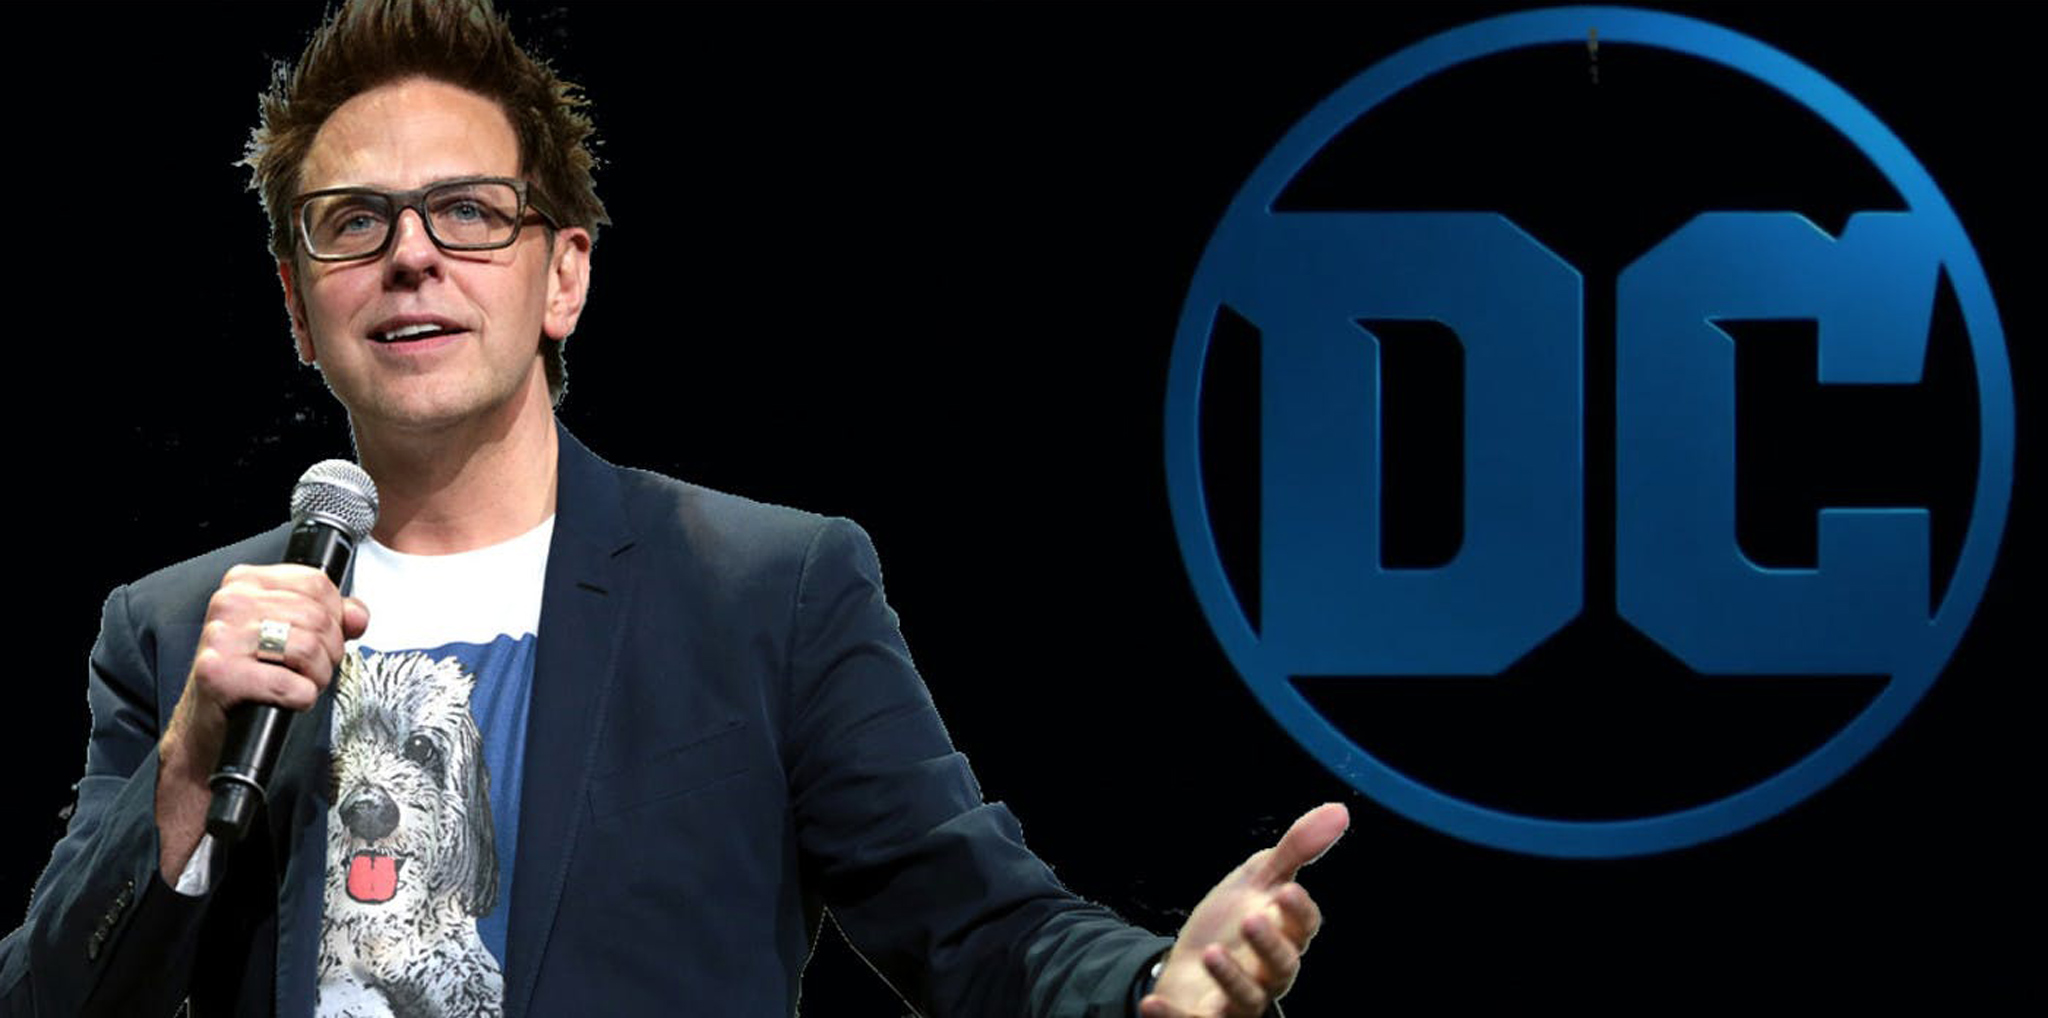 El director James Gunn será el encargado de la parte creativa de DC mientras que Peter Safran manejará la parte empresarial.